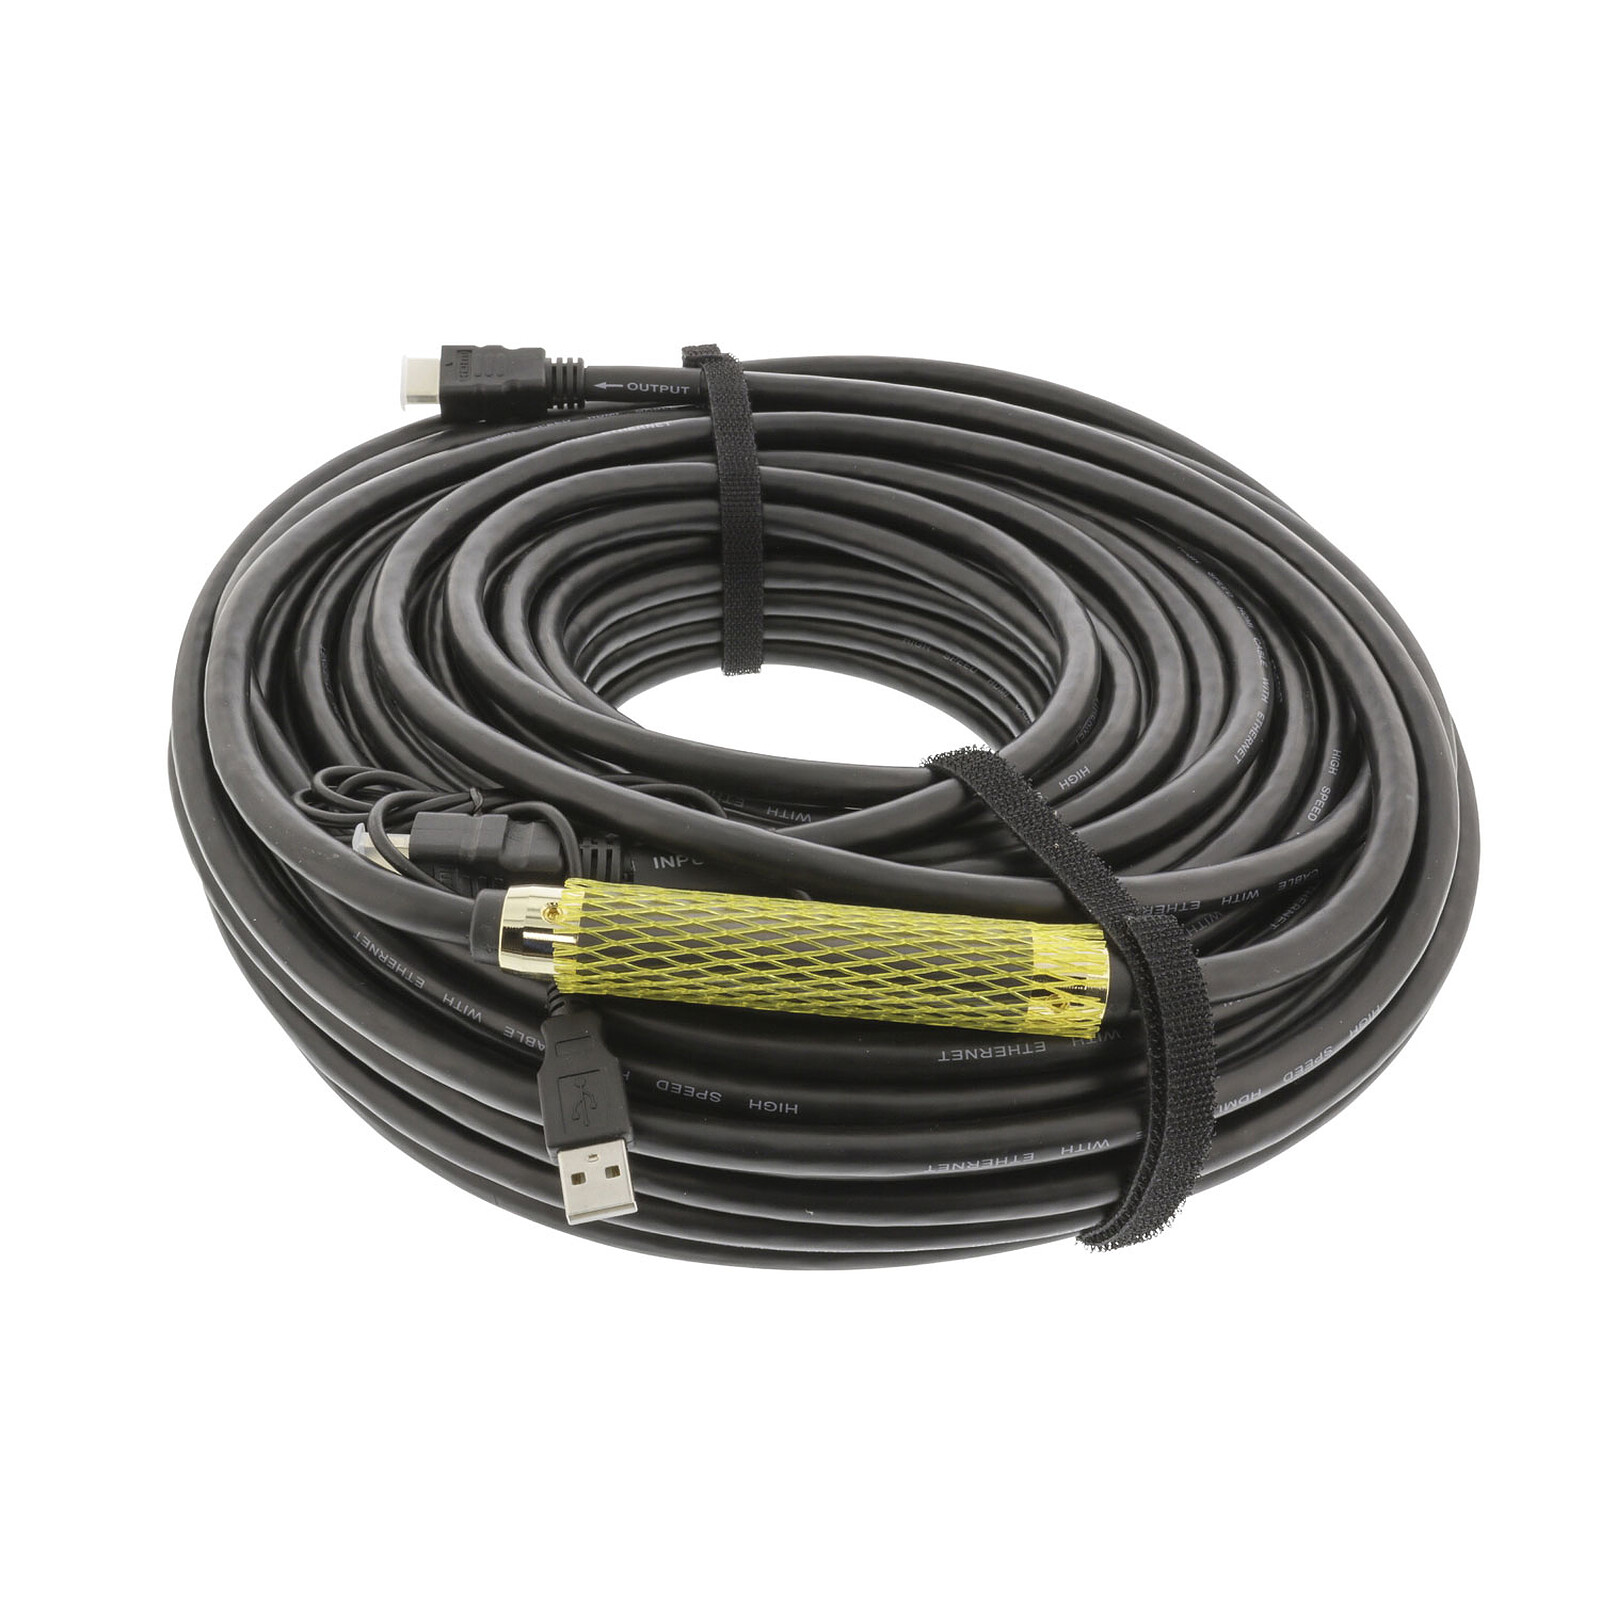 Cable HDMI de alta velocidad con Ethernet blanco (0,5 metros) - HDMI - LDLC